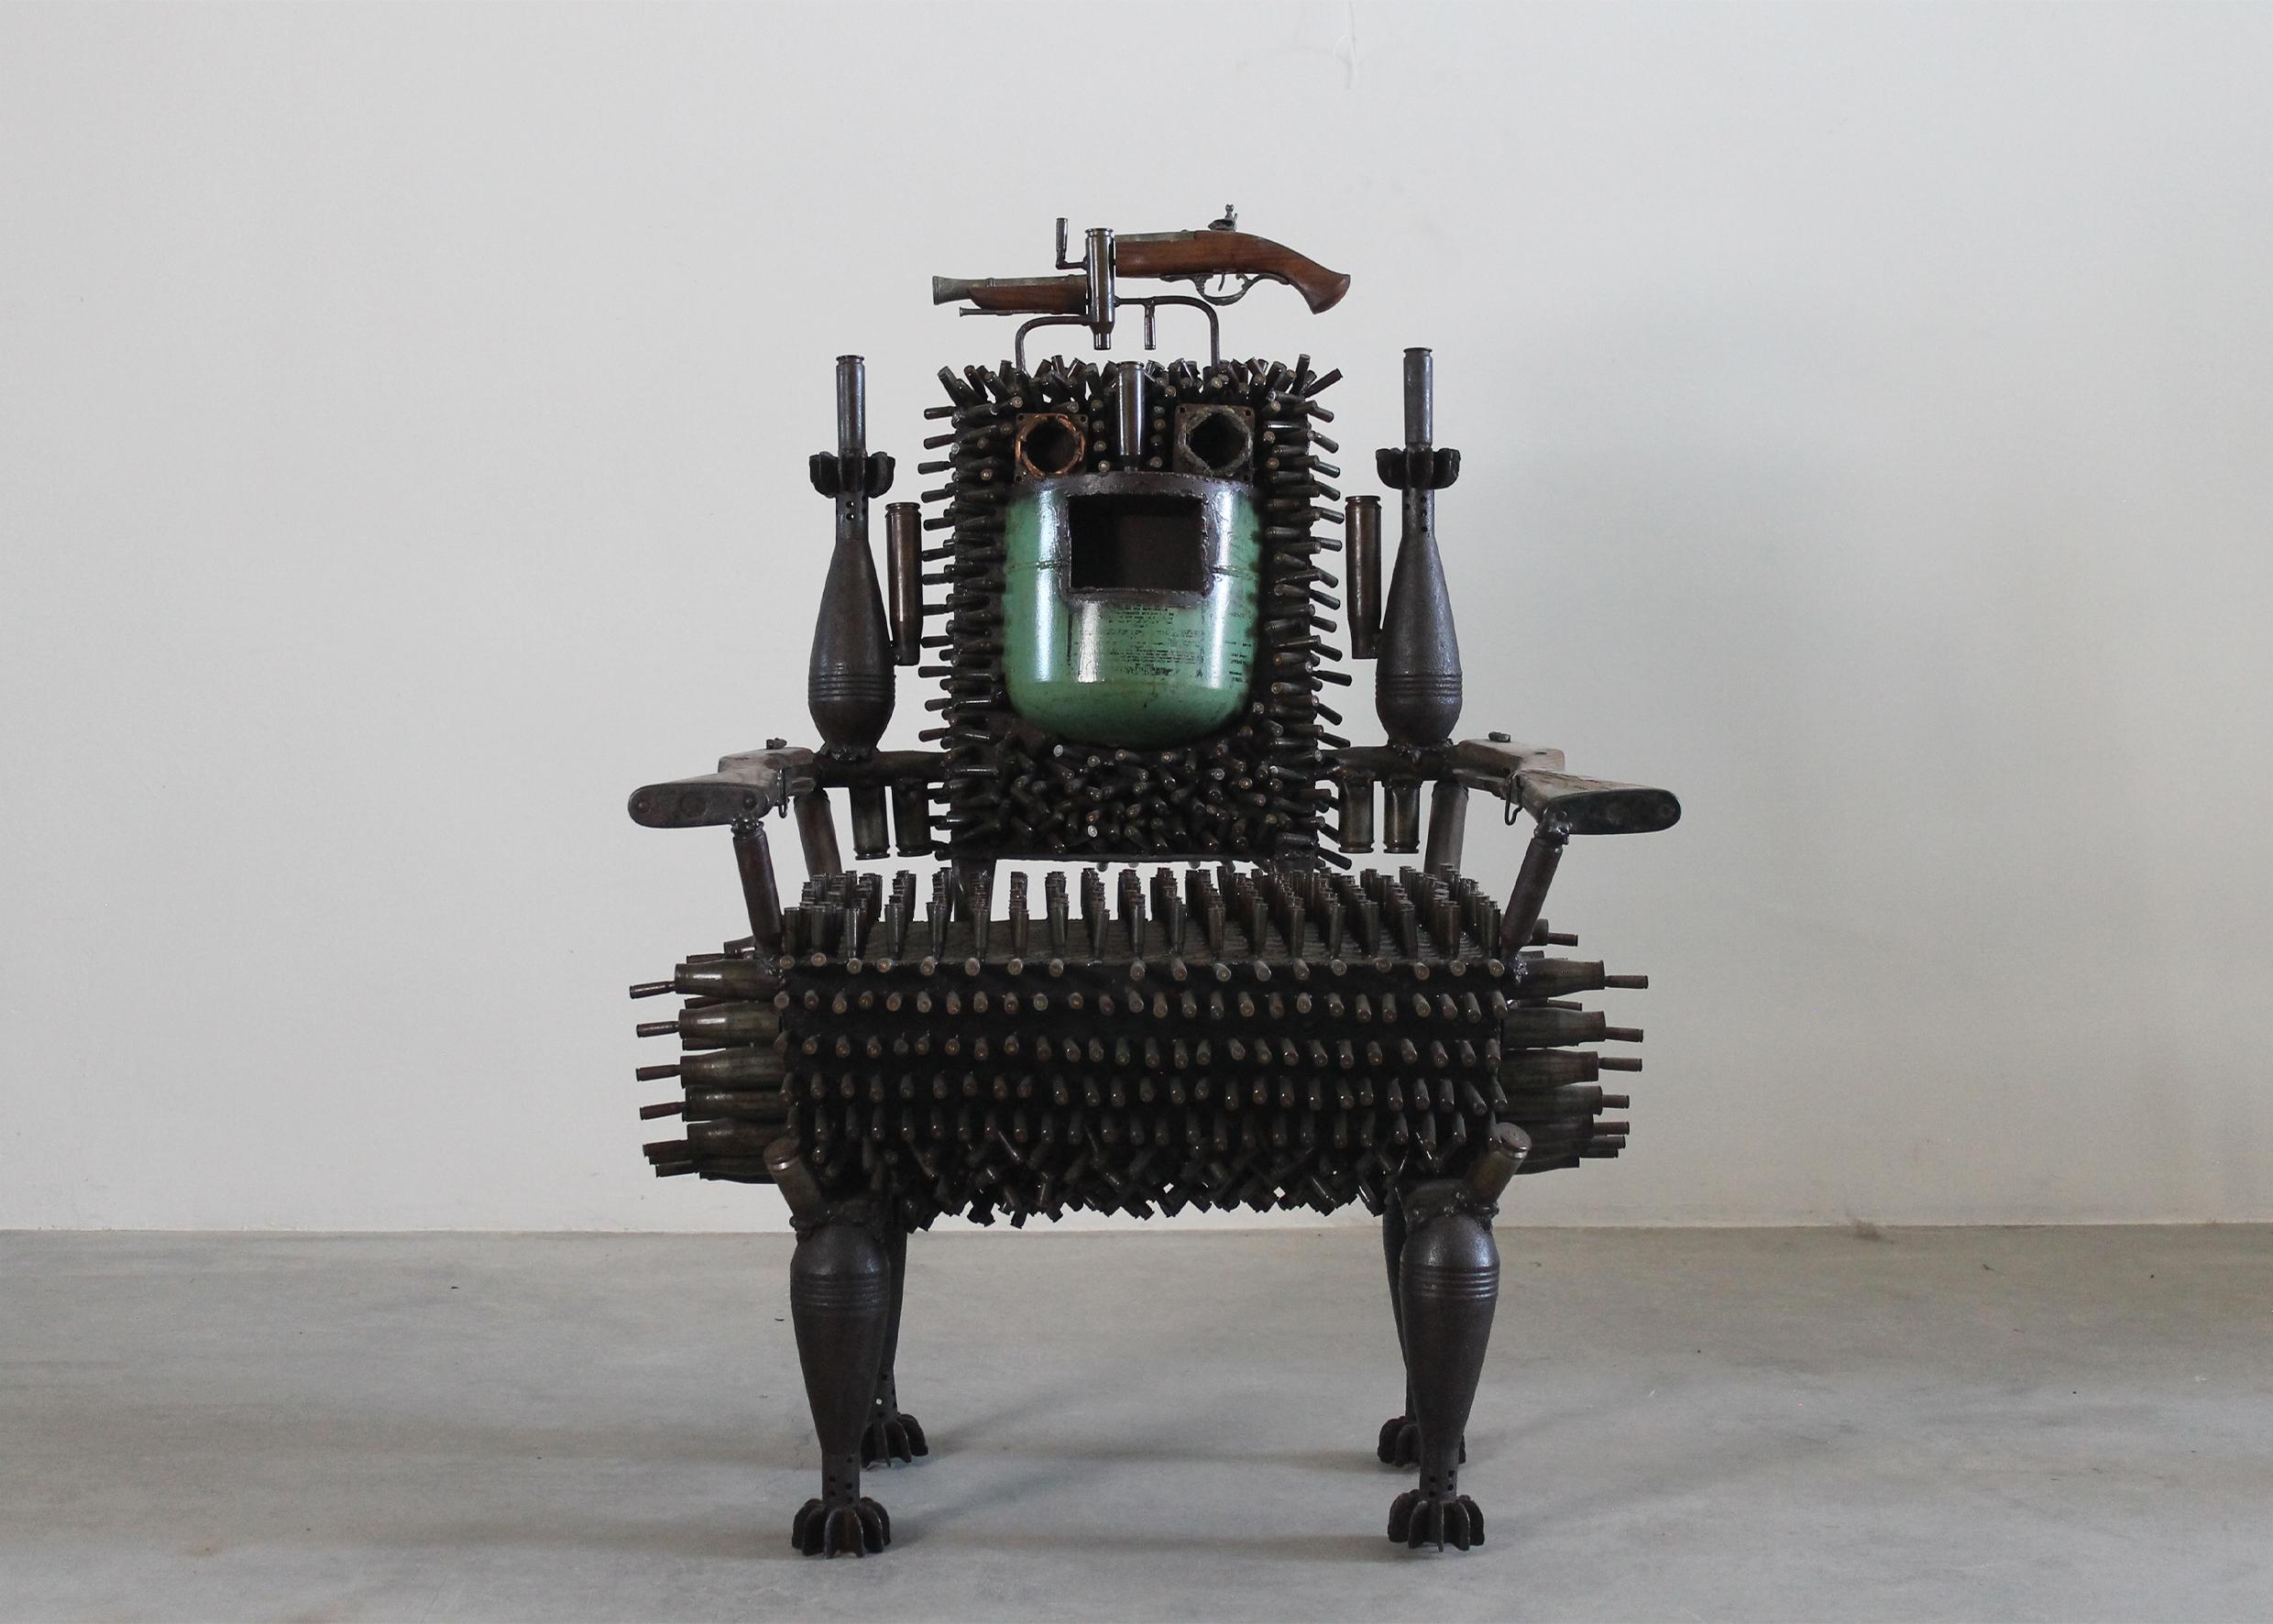 Der außergewöhnliche talentierte Thron (2018), ein einzigartiges Kunstwerk von Gonçalo Mabunda aus Metallschrott und ausgemusterter Munition.
Mabunda wurde 1975 in Maputo, Mosambik, geboren. Er wird sein Land im mosambikanischen Pavillon auf der